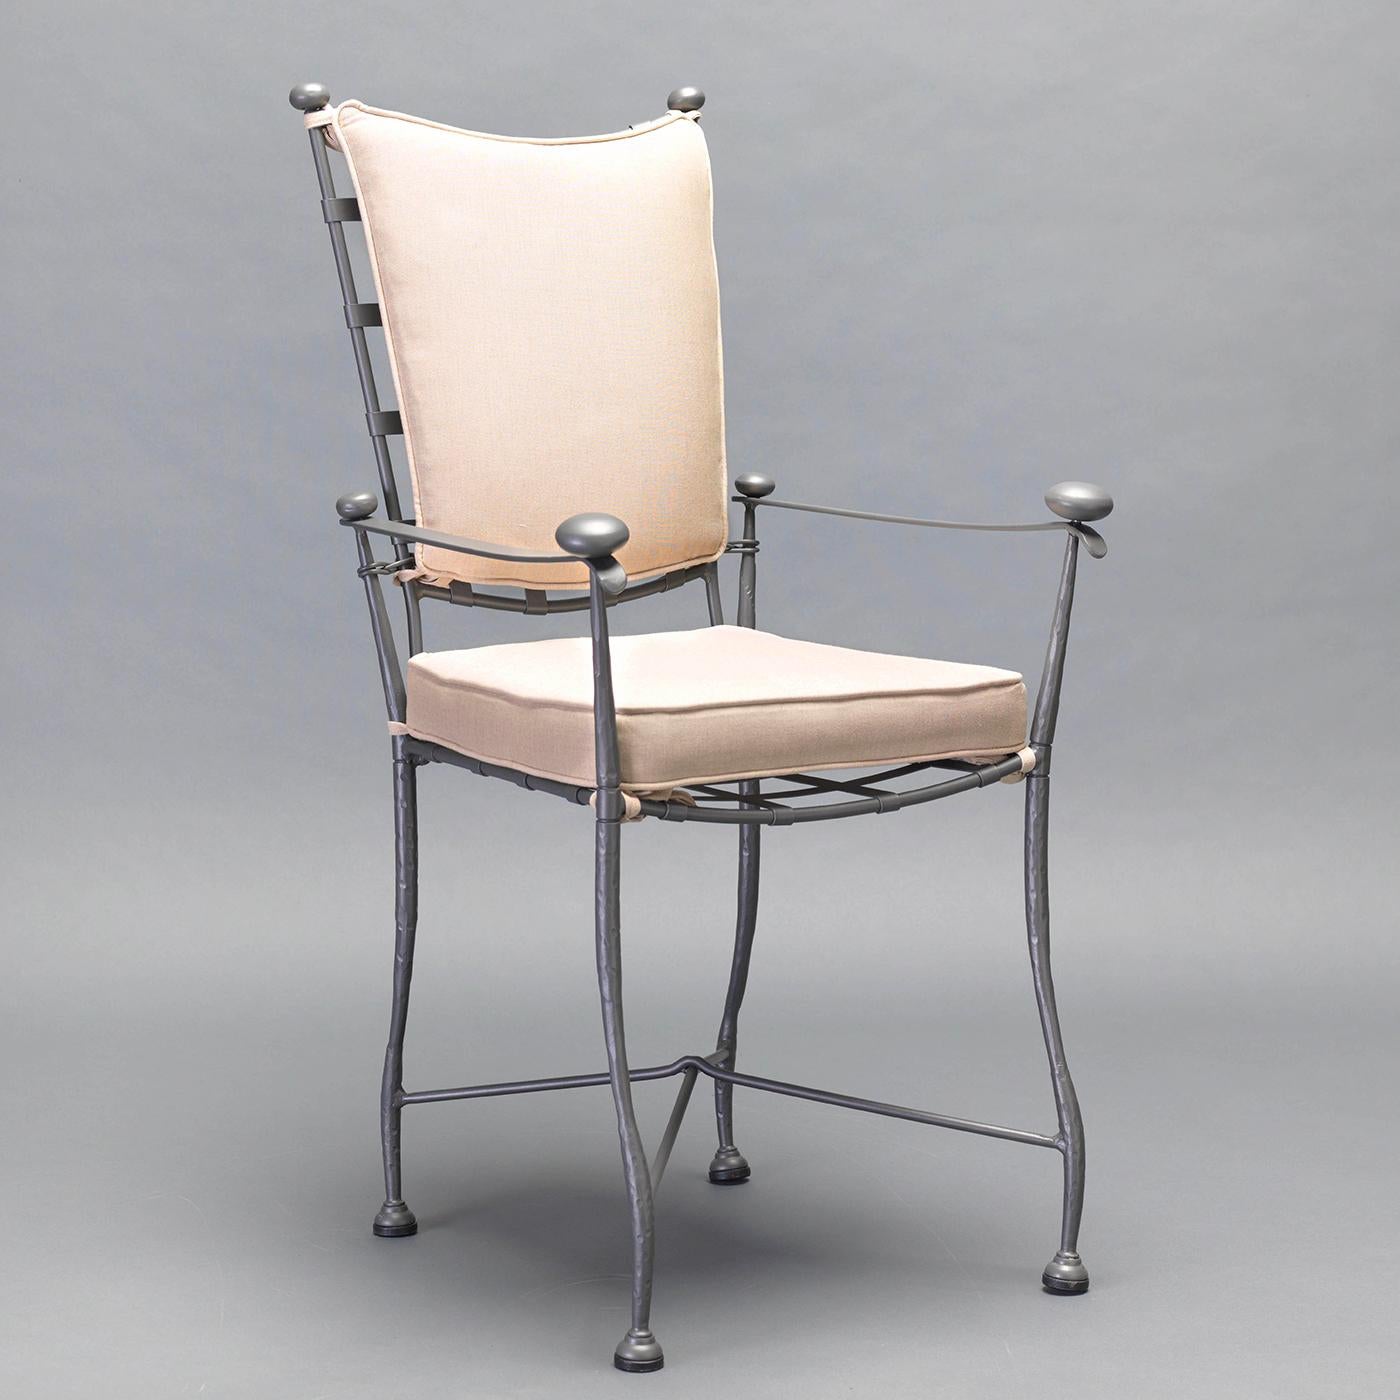 Cette chaise intemporelle incarne l'élégance rustique-chic de la campagne toscane. Entièrement réalisée en acier inoxydable forgé, cette pièce est délicieusement travaillée, avec des pieds en forme de vagues délicates, des détails incurvés sur